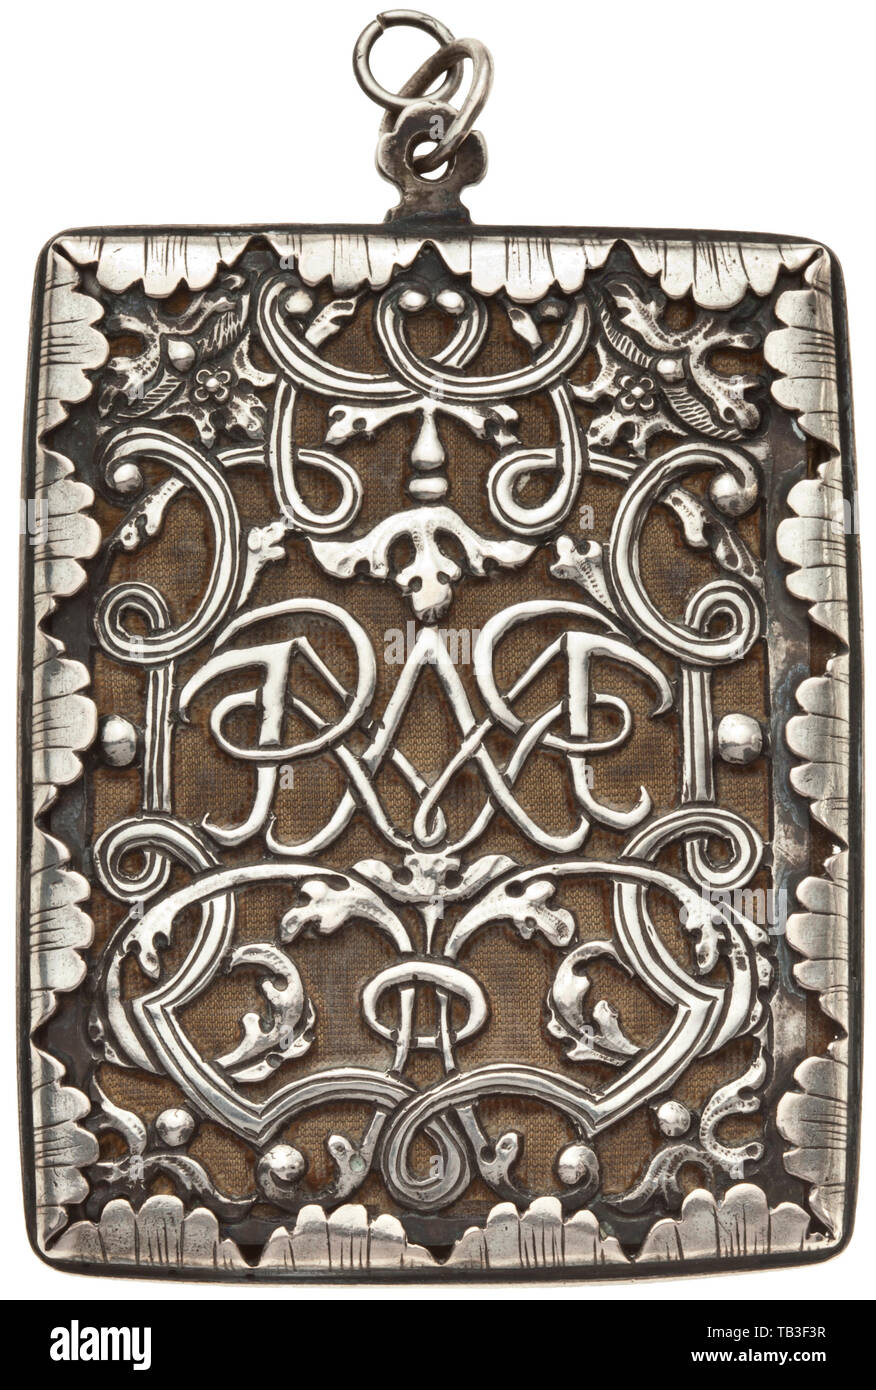 A sud di un argento tedesco talismano ciondolo (cosiddetto Breverl), circa 1730/40, pendente rettangolare su un anello di loop. Riccamente openworked strapwork su entrambi i lati, underlaid con indossato il velluto. Entrambi i lati con il monogramma specchio "IESUS' e 'Maria'. Incorniciato da un bordo del guscio della decorazione. Un pezzo di carta piegato all'interno con citazioni e immagini, che serve come un talismano. Dimensioni 7,2 x 5,8 cm, peso 62 g. artigianato, artigianato, craft, oggetto, gli oggetti alambicchi, clipping, clippings, tagliate, cut-out, cut-outs, storico, storico Additional-Rights-Clearance-Info-Not-Available Foto Stock